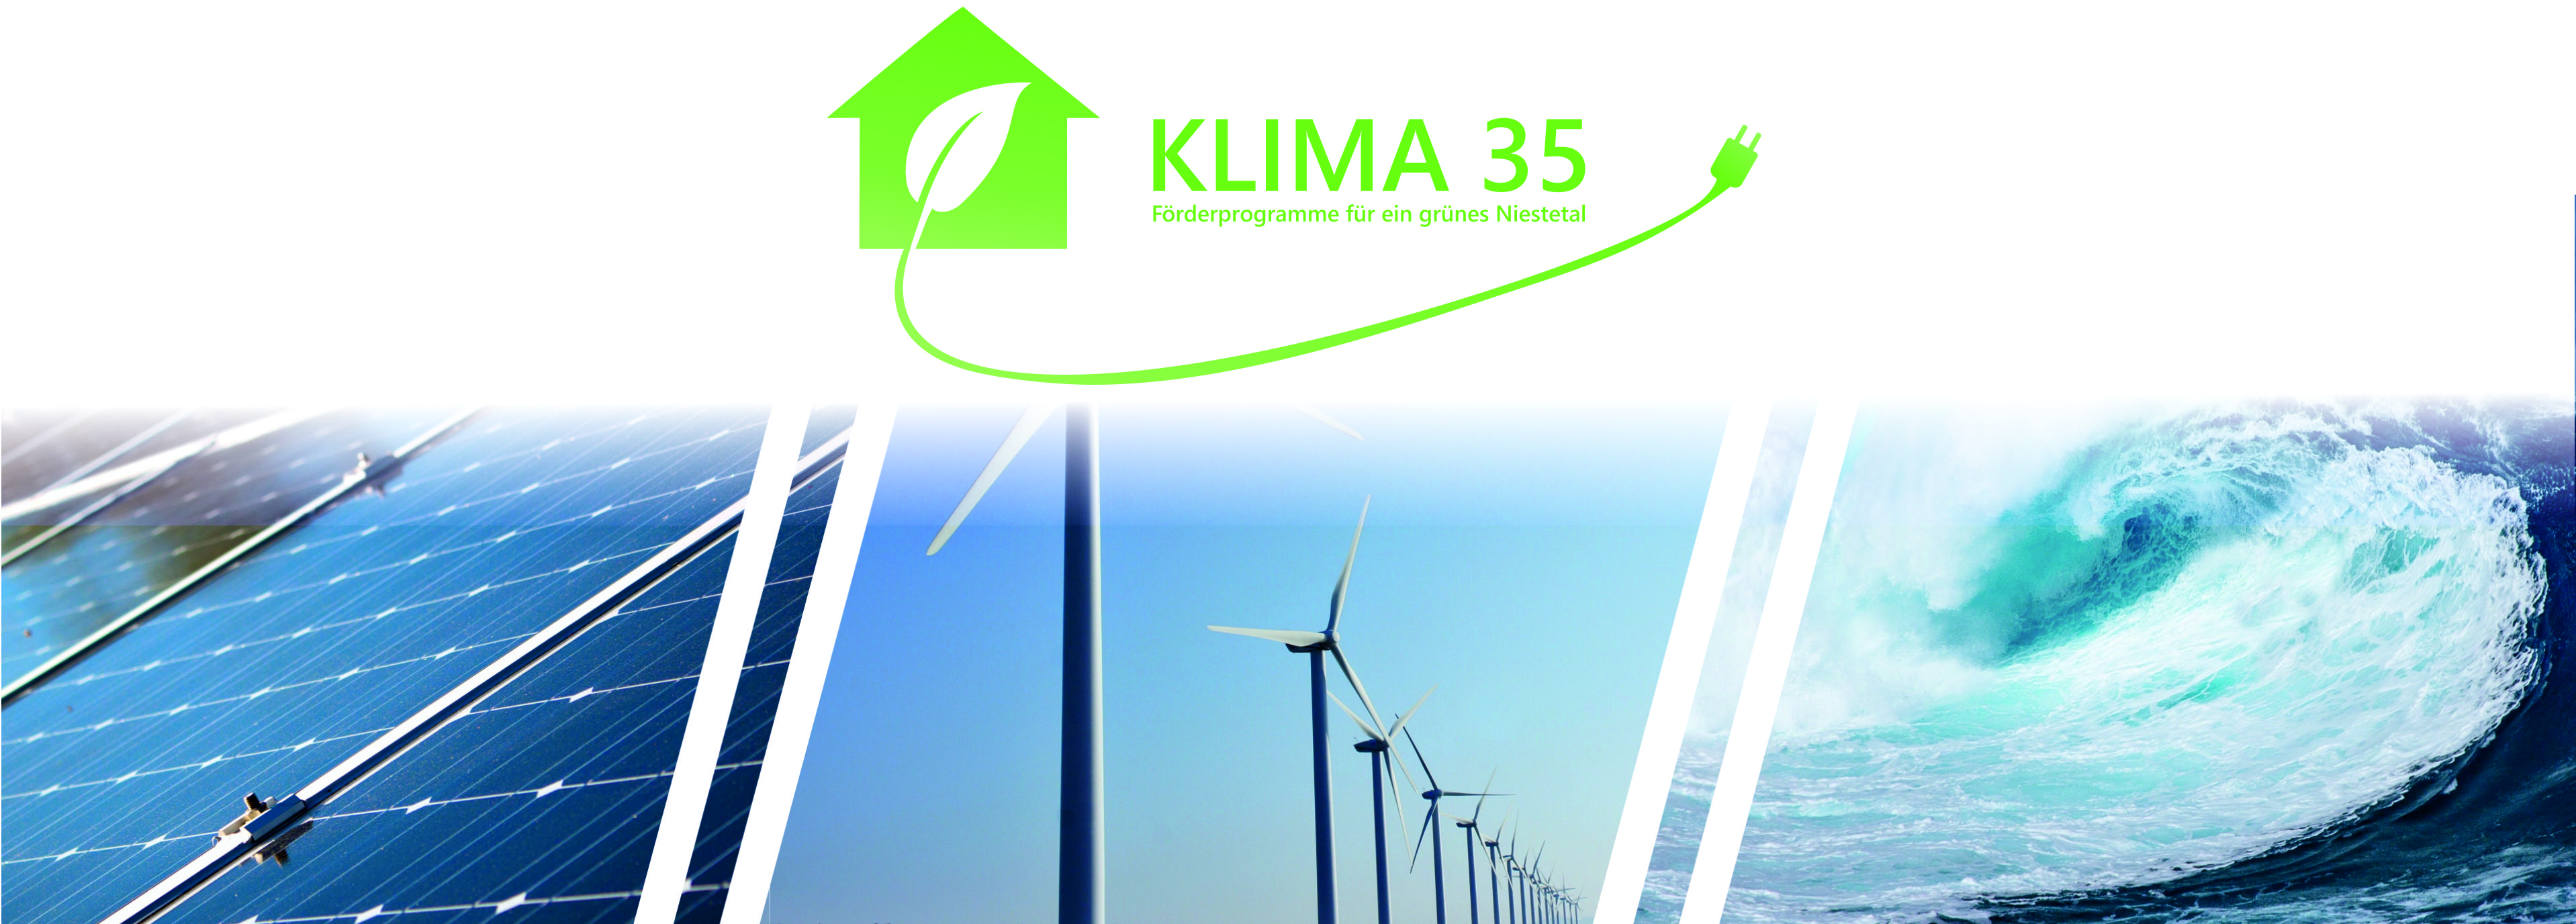 Klima 35, Förderprogramme für ein grünes Niestetal. Dargestellt sind neben dem Logo auch Wellen, PV Anlagen und Windrädern.